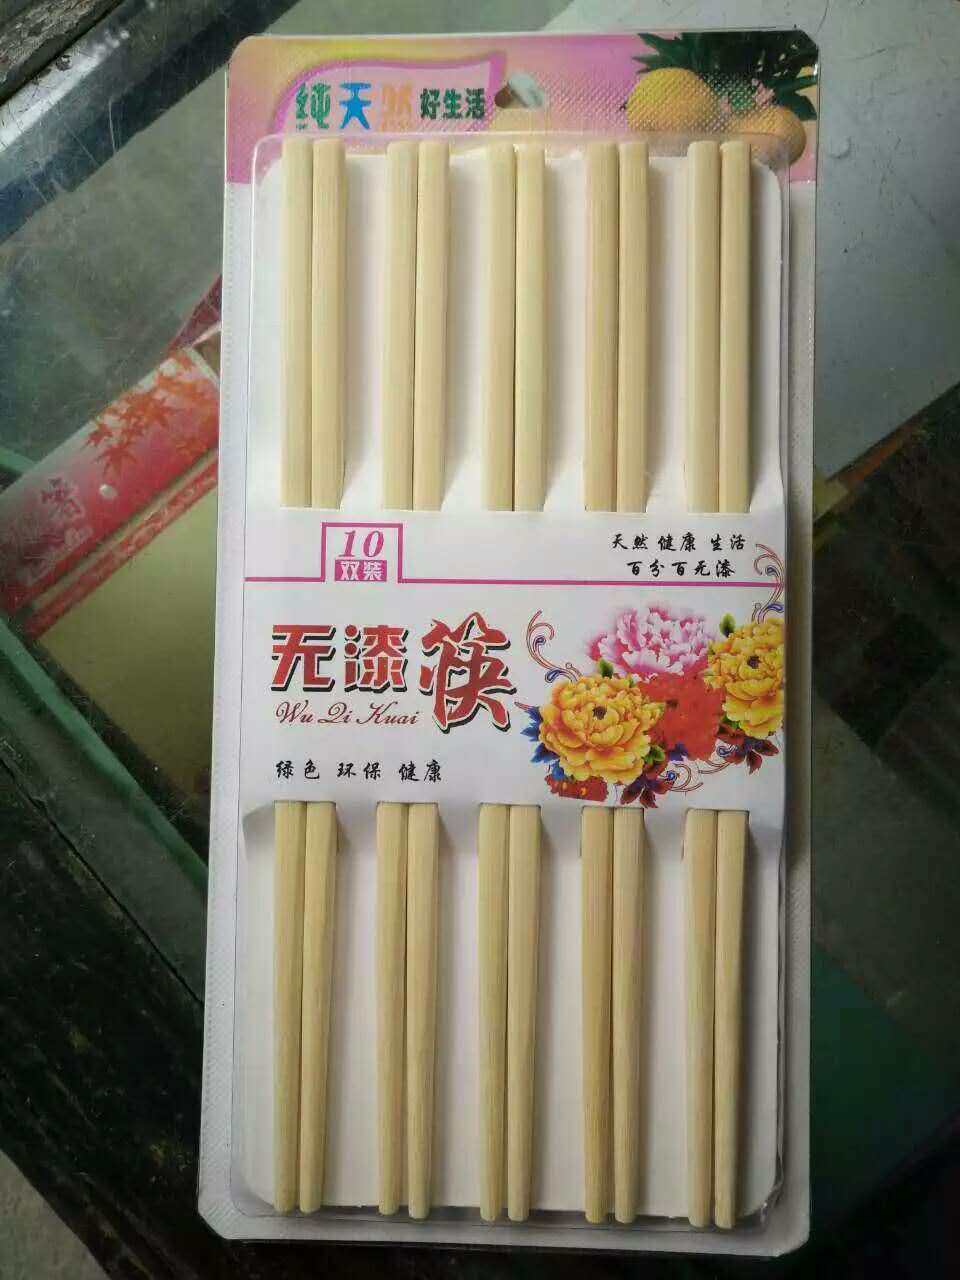 高档筷 吸塑筷 家用筷 光板筷批发